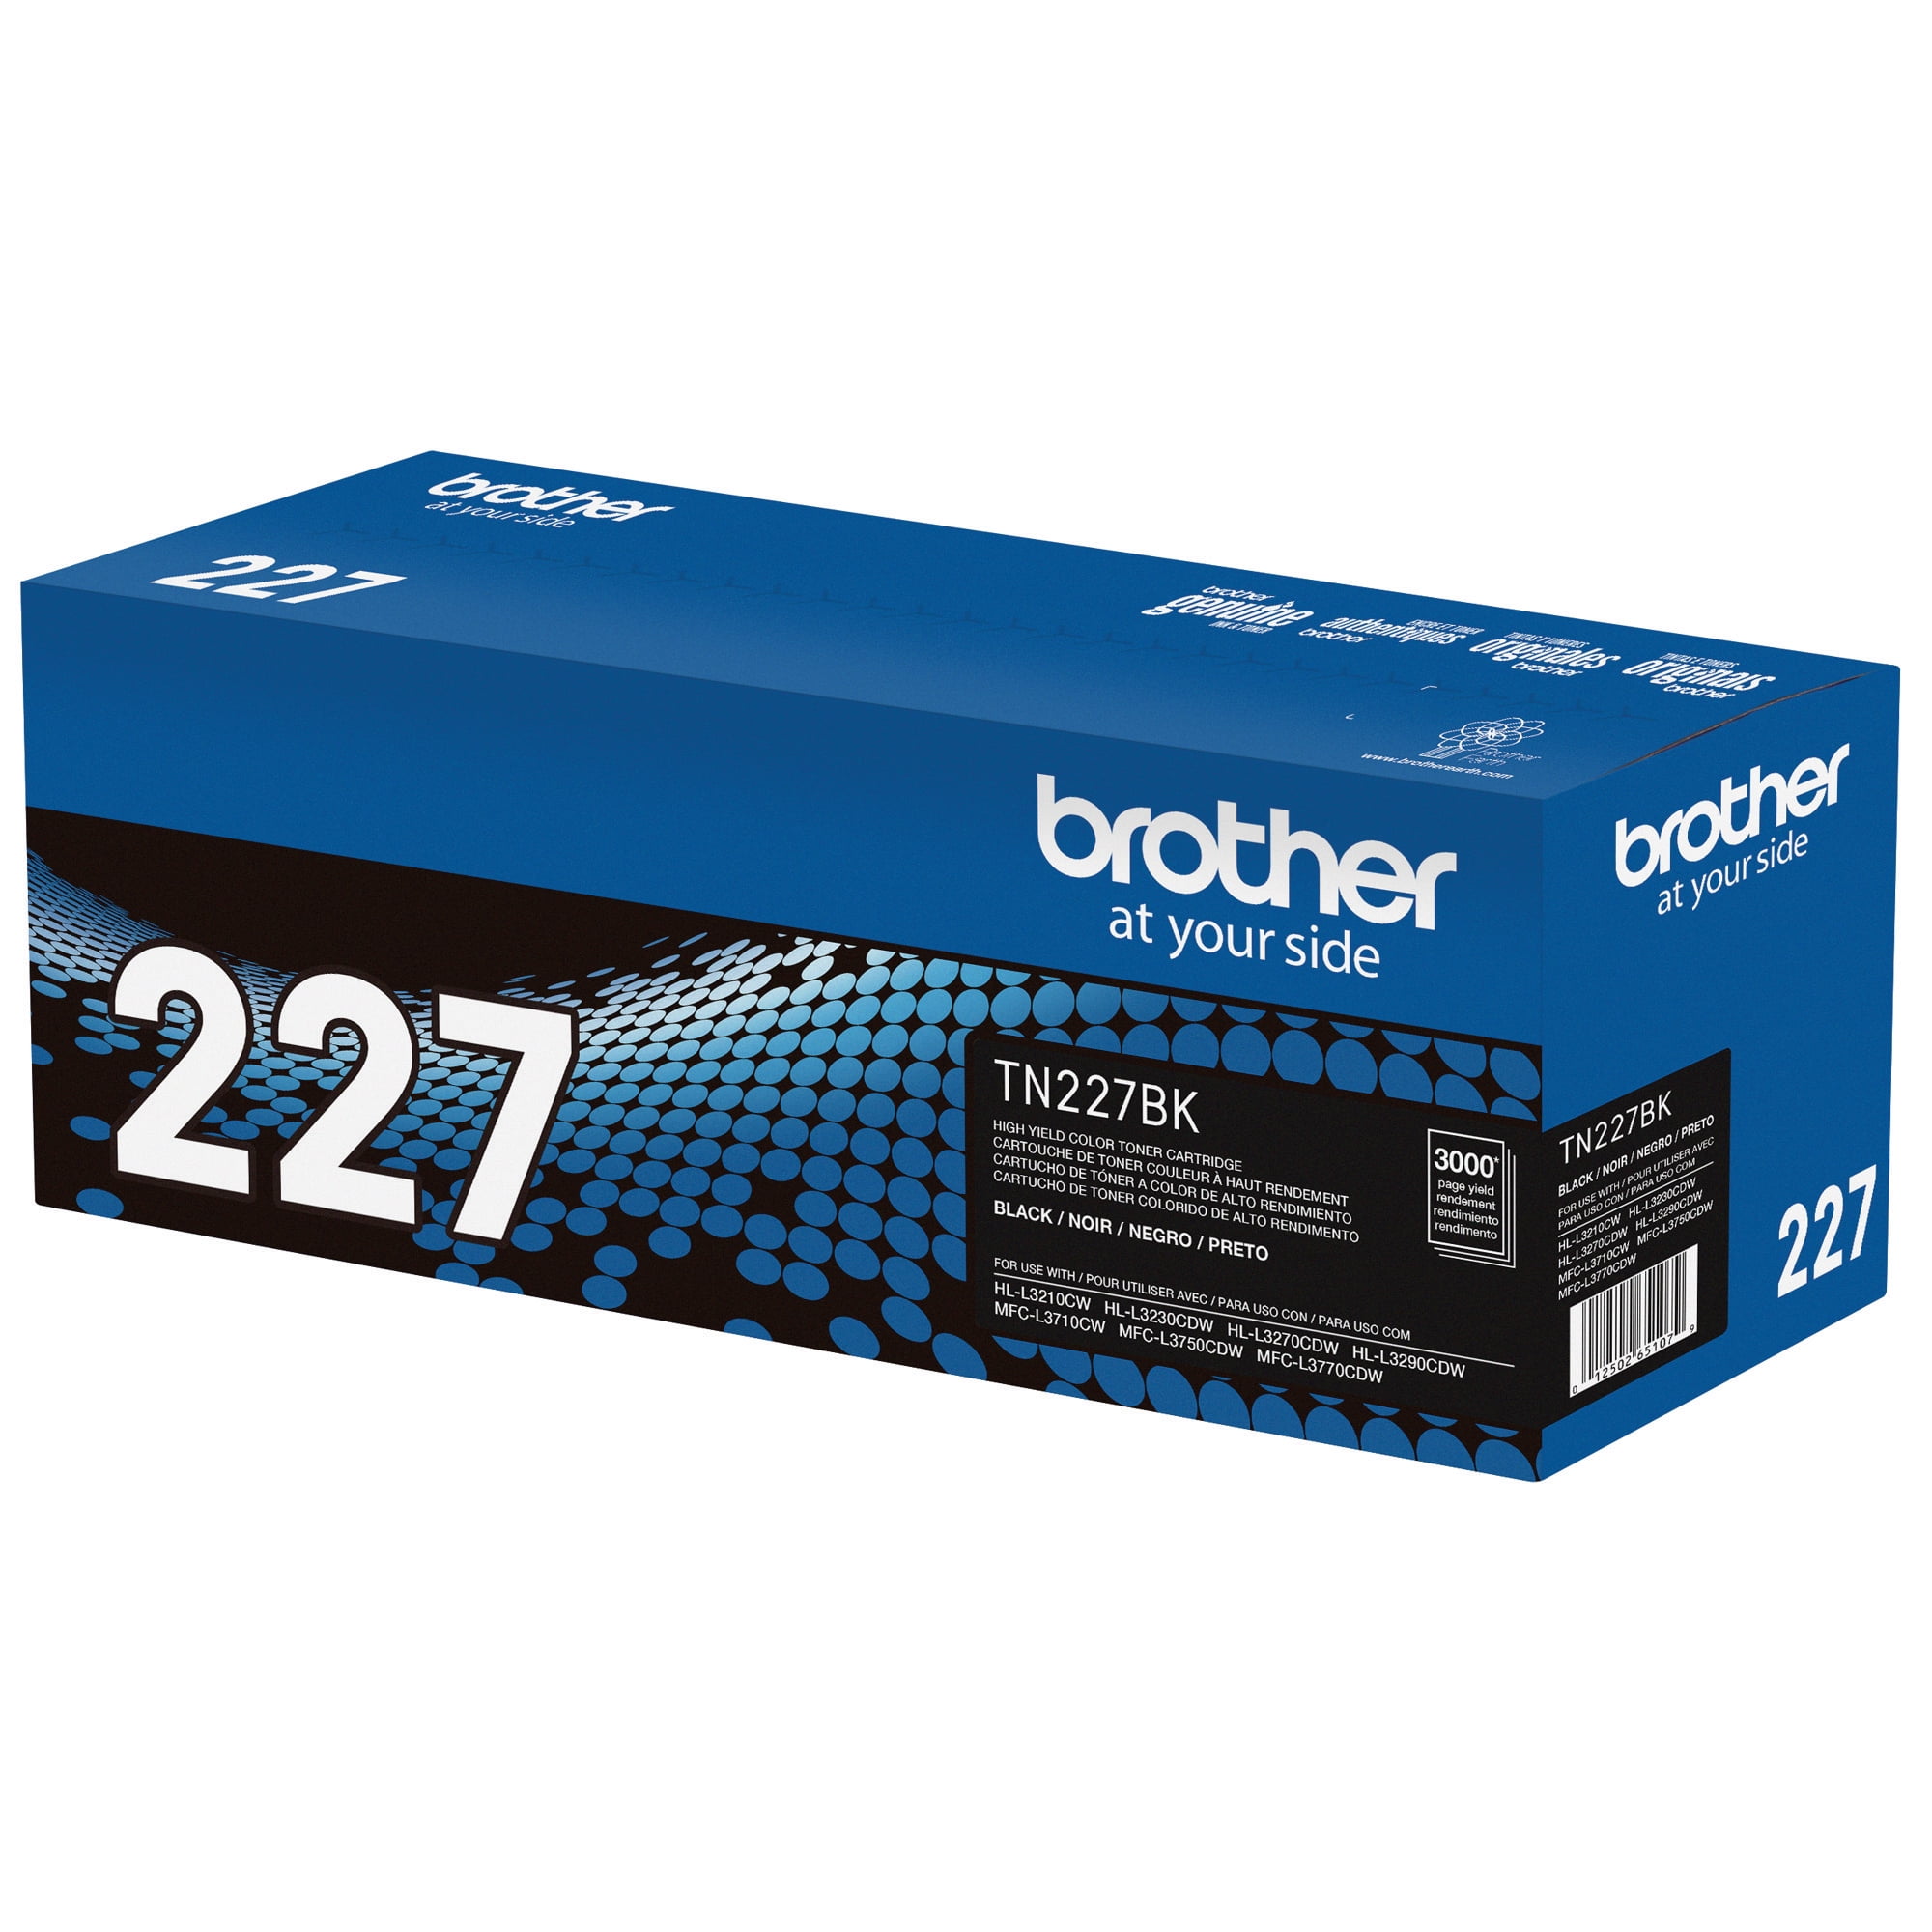 Toner compatible pour Brother HL-L3230CDW MFC-L3710CW HL-L3270CDW